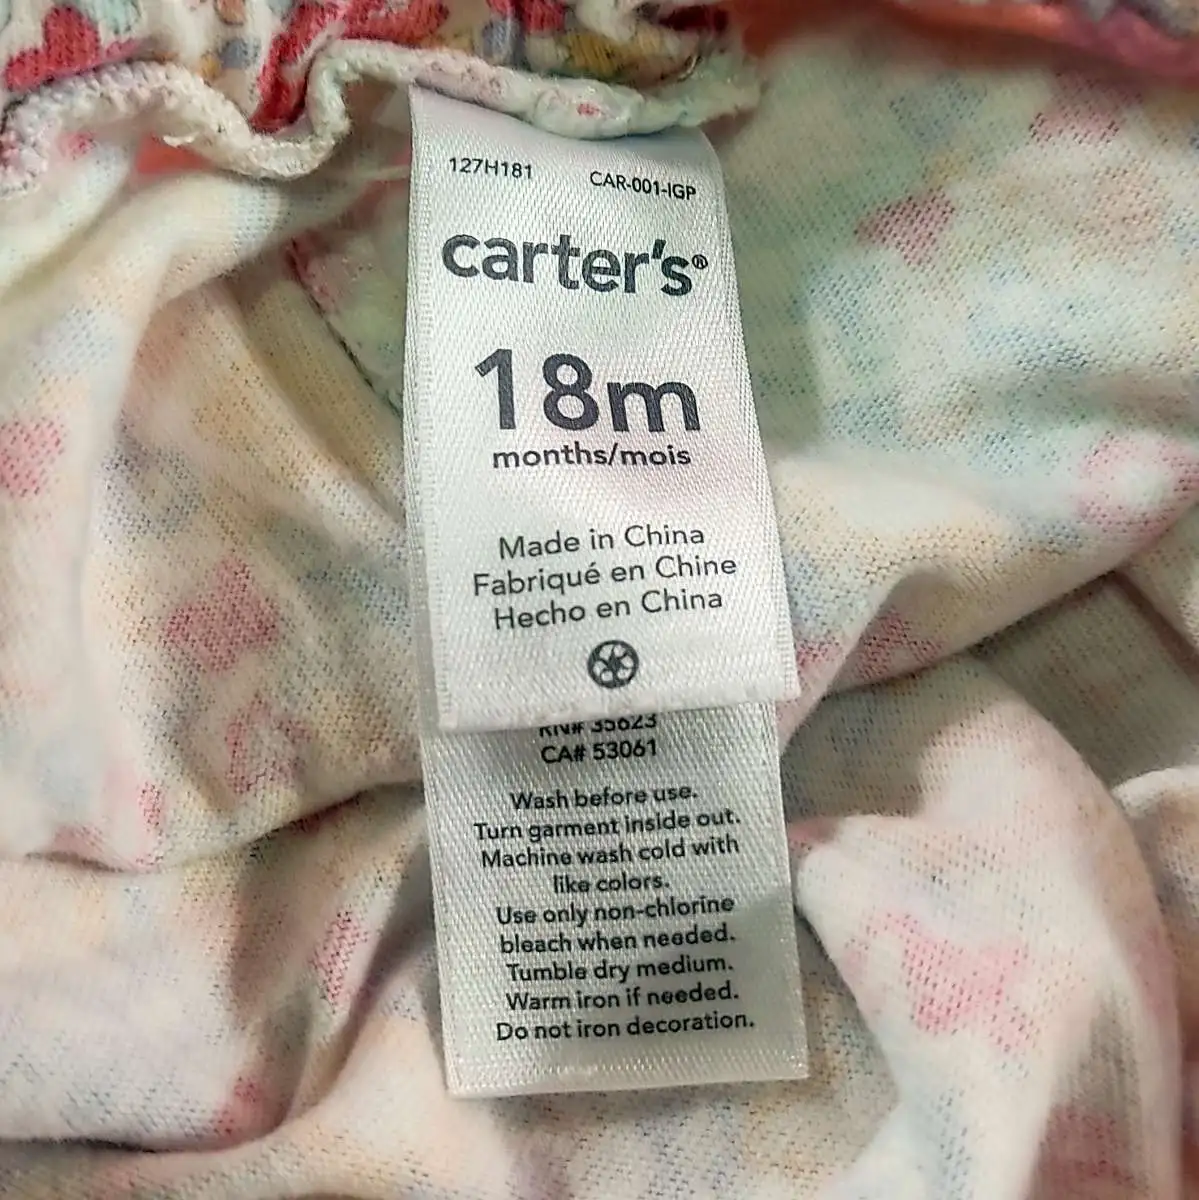 carter's ชุดหมีแขนระบายขาเว้าผ้าฉลุสีชมพูอ่อน carter's เสื้อยืดแขนสั้นสีชมพูมีรูปห่านสีขาวกางเกงขายาว 18m